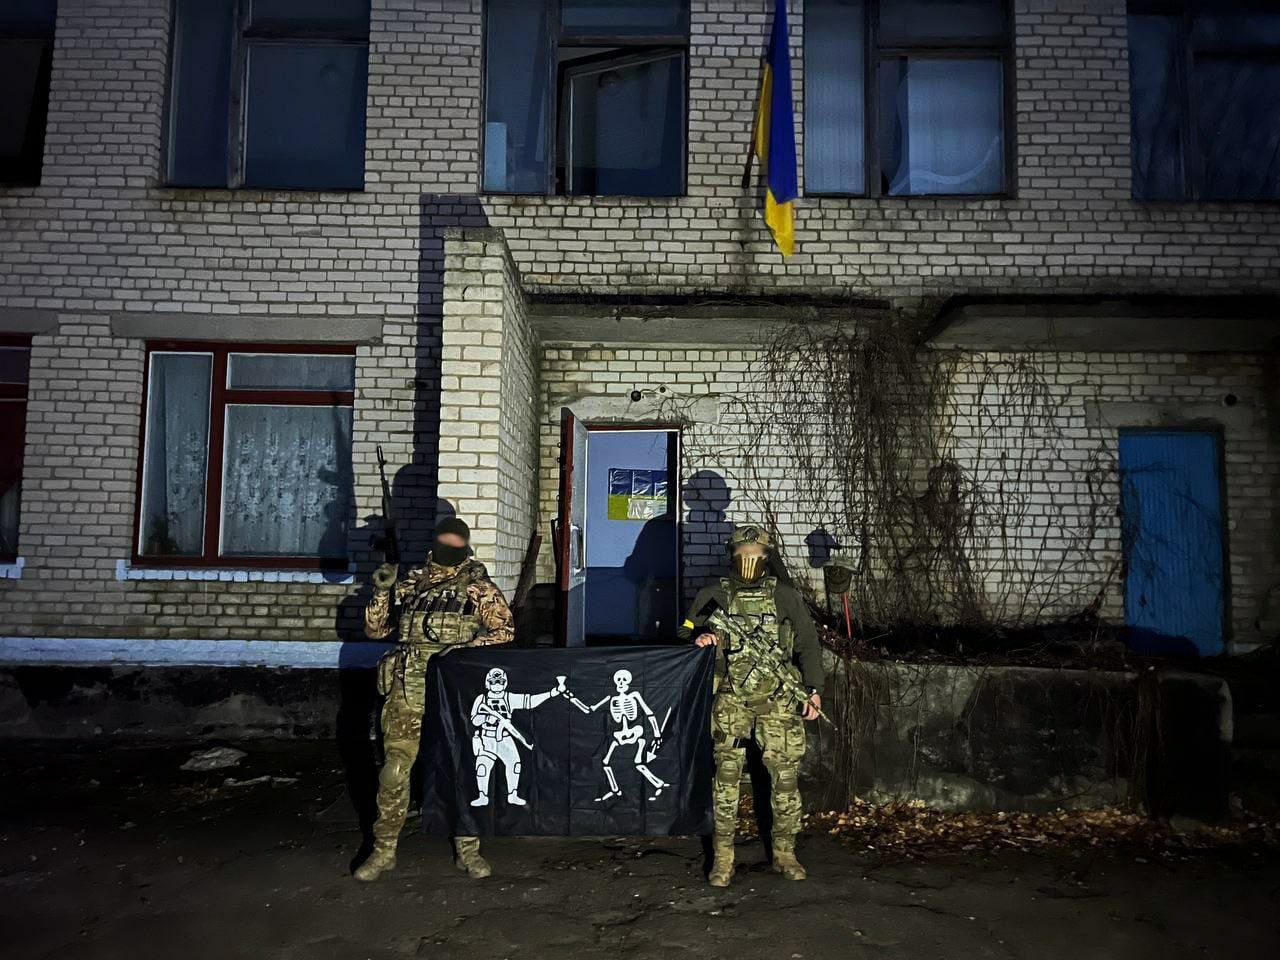 ВСУ продвигаются в Николаевской области: вошли в еще одно село под Снигиревкой